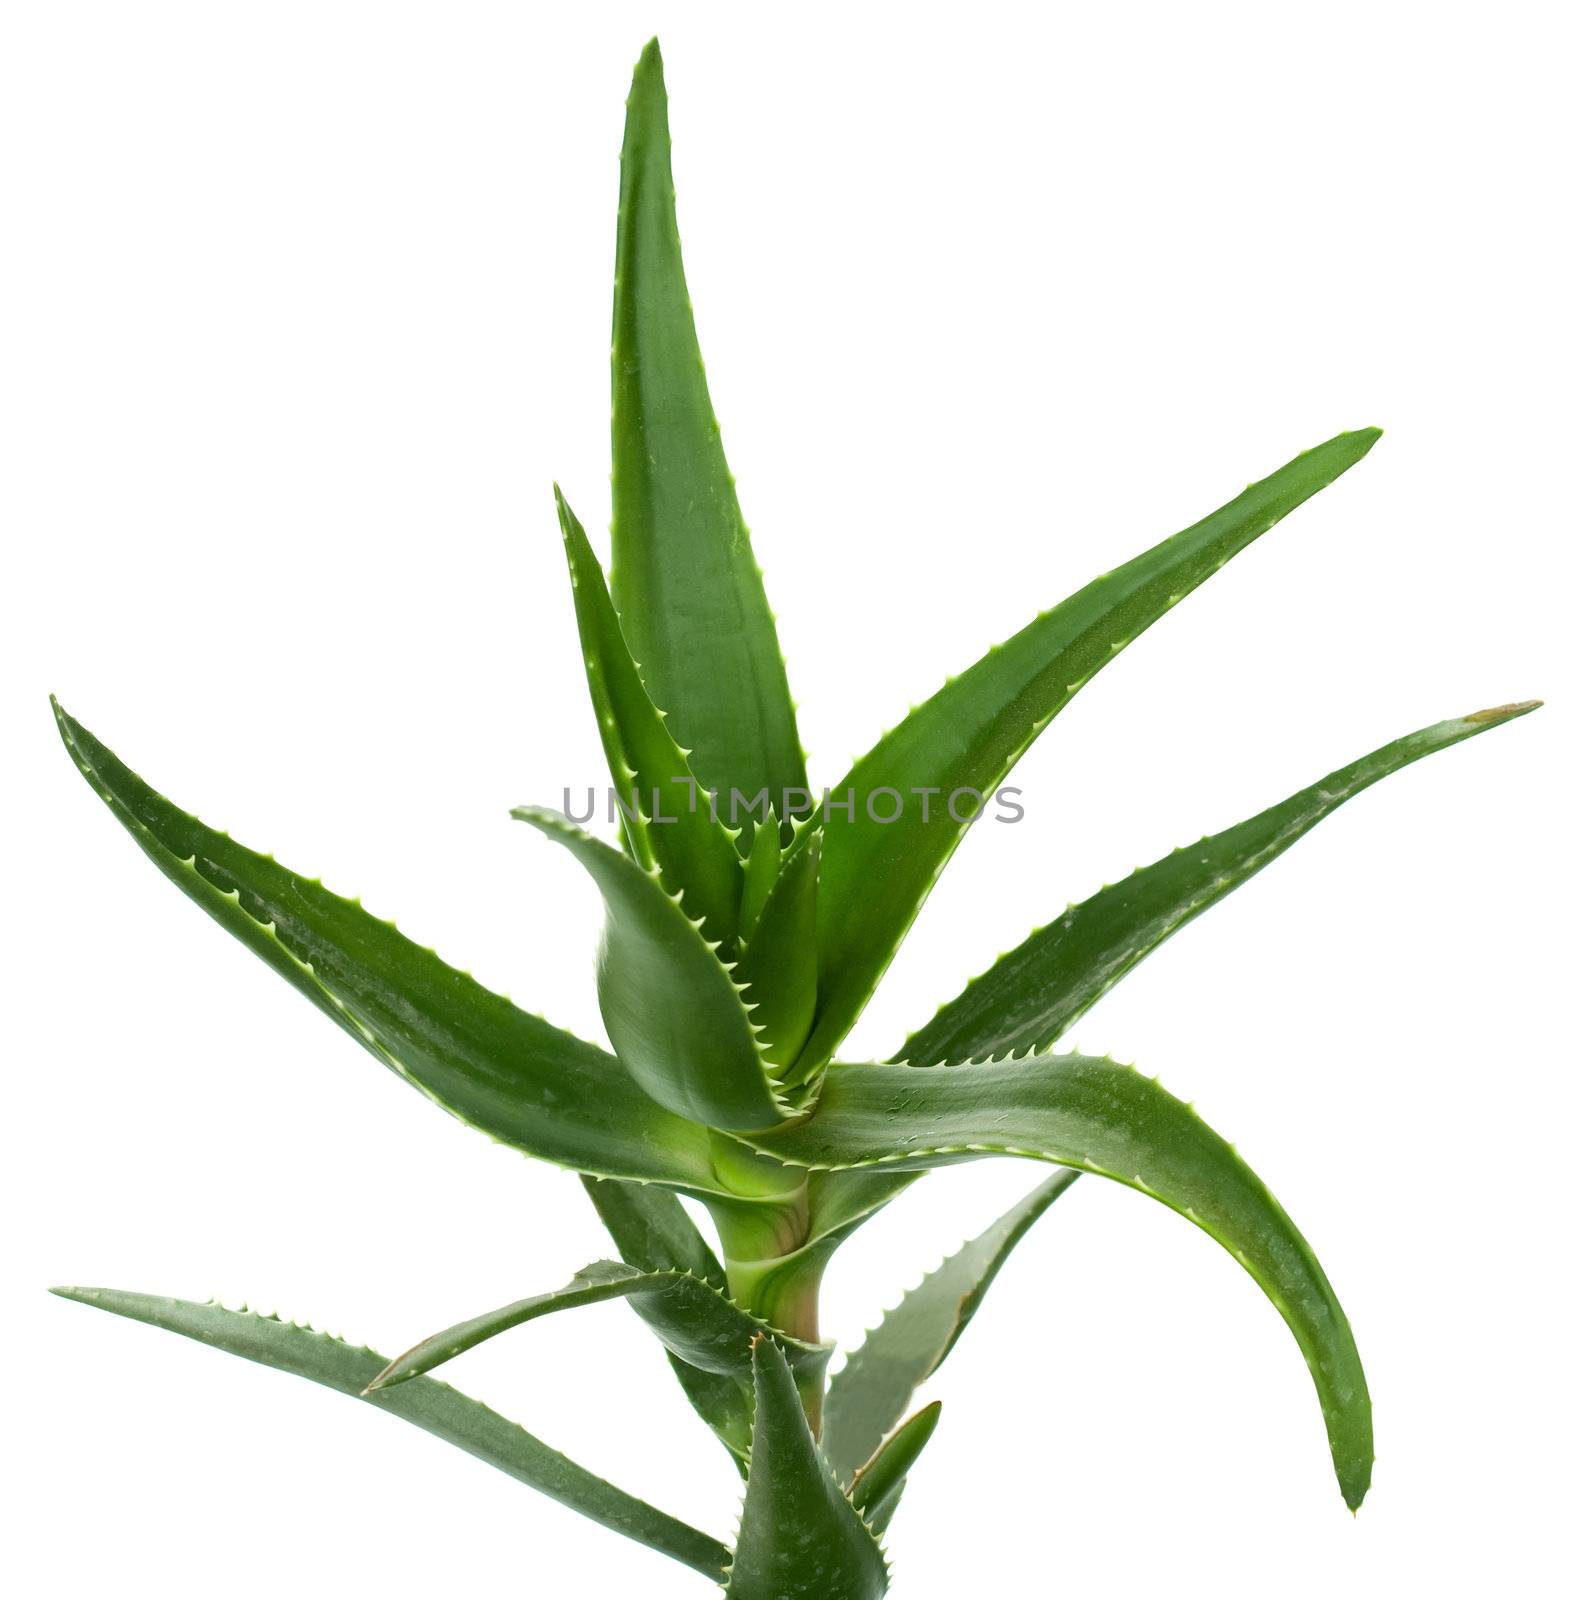 Aloe vera isolated on white background